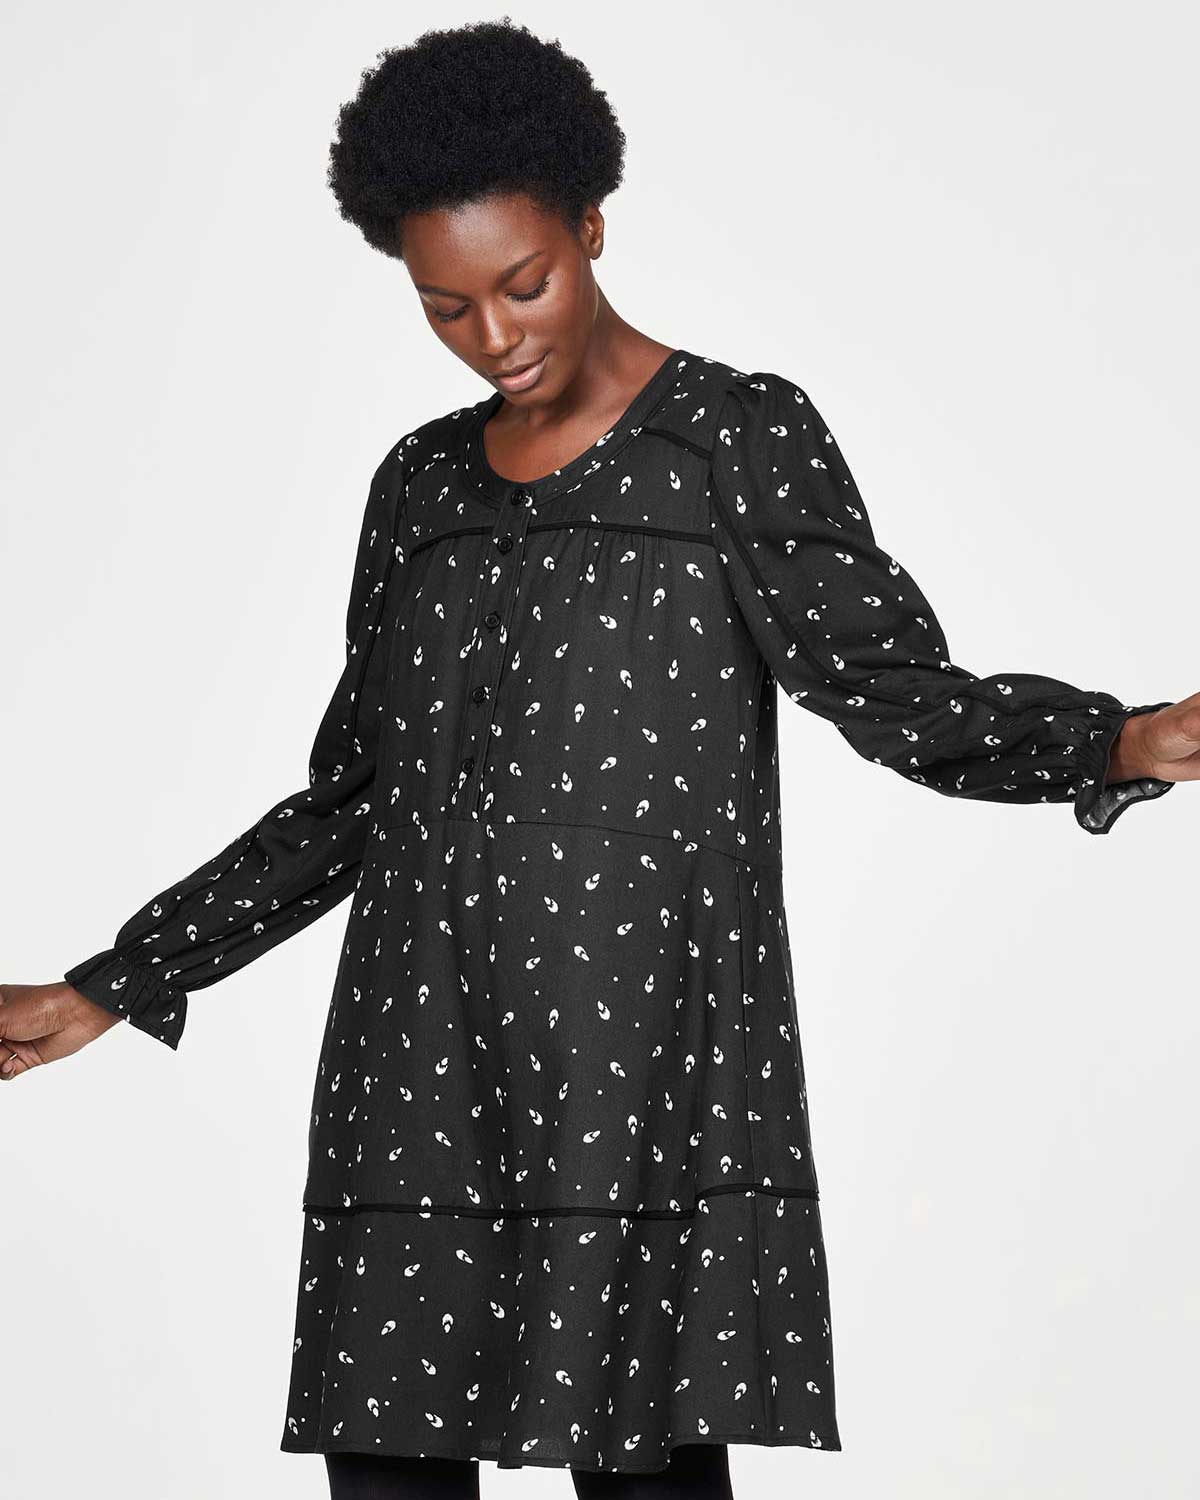 Svart løs kjole med mønster - 100 % Tencel » Etiske & økologiske klær » Grønt Skift